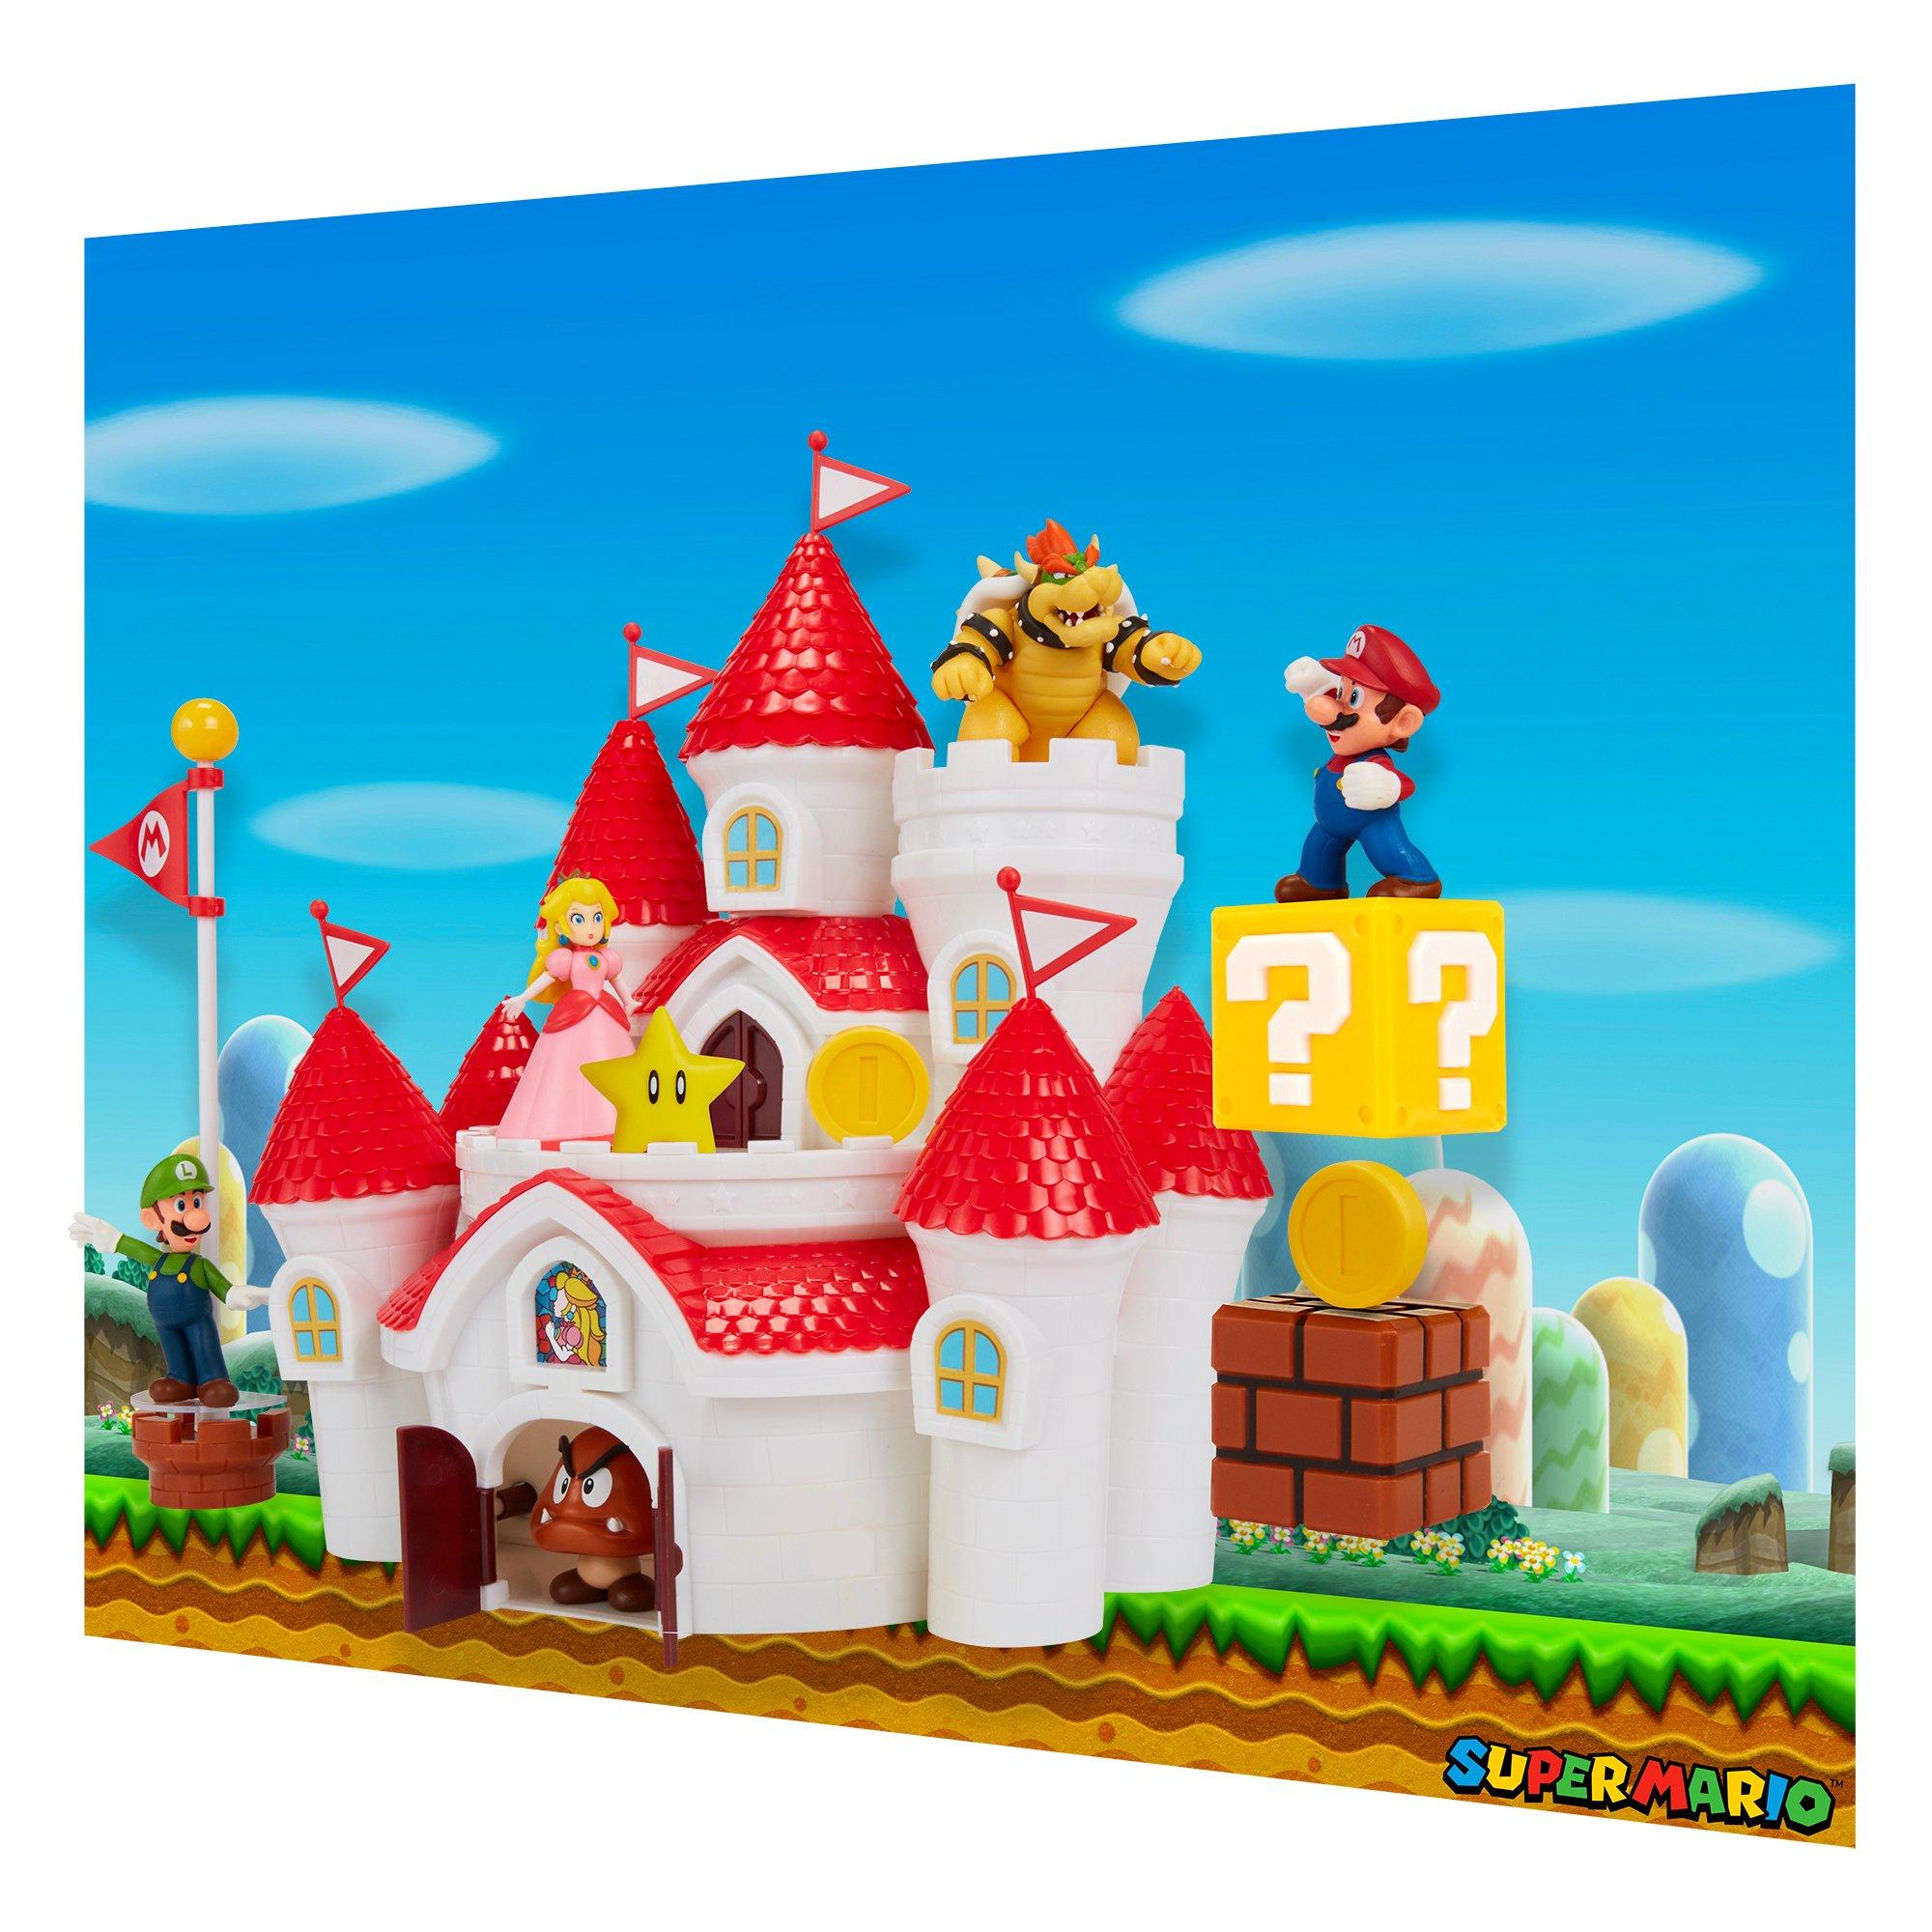 Jakks Pacific Super Mario Bros. Deluxe Mushroom Kingdom Castle Playset